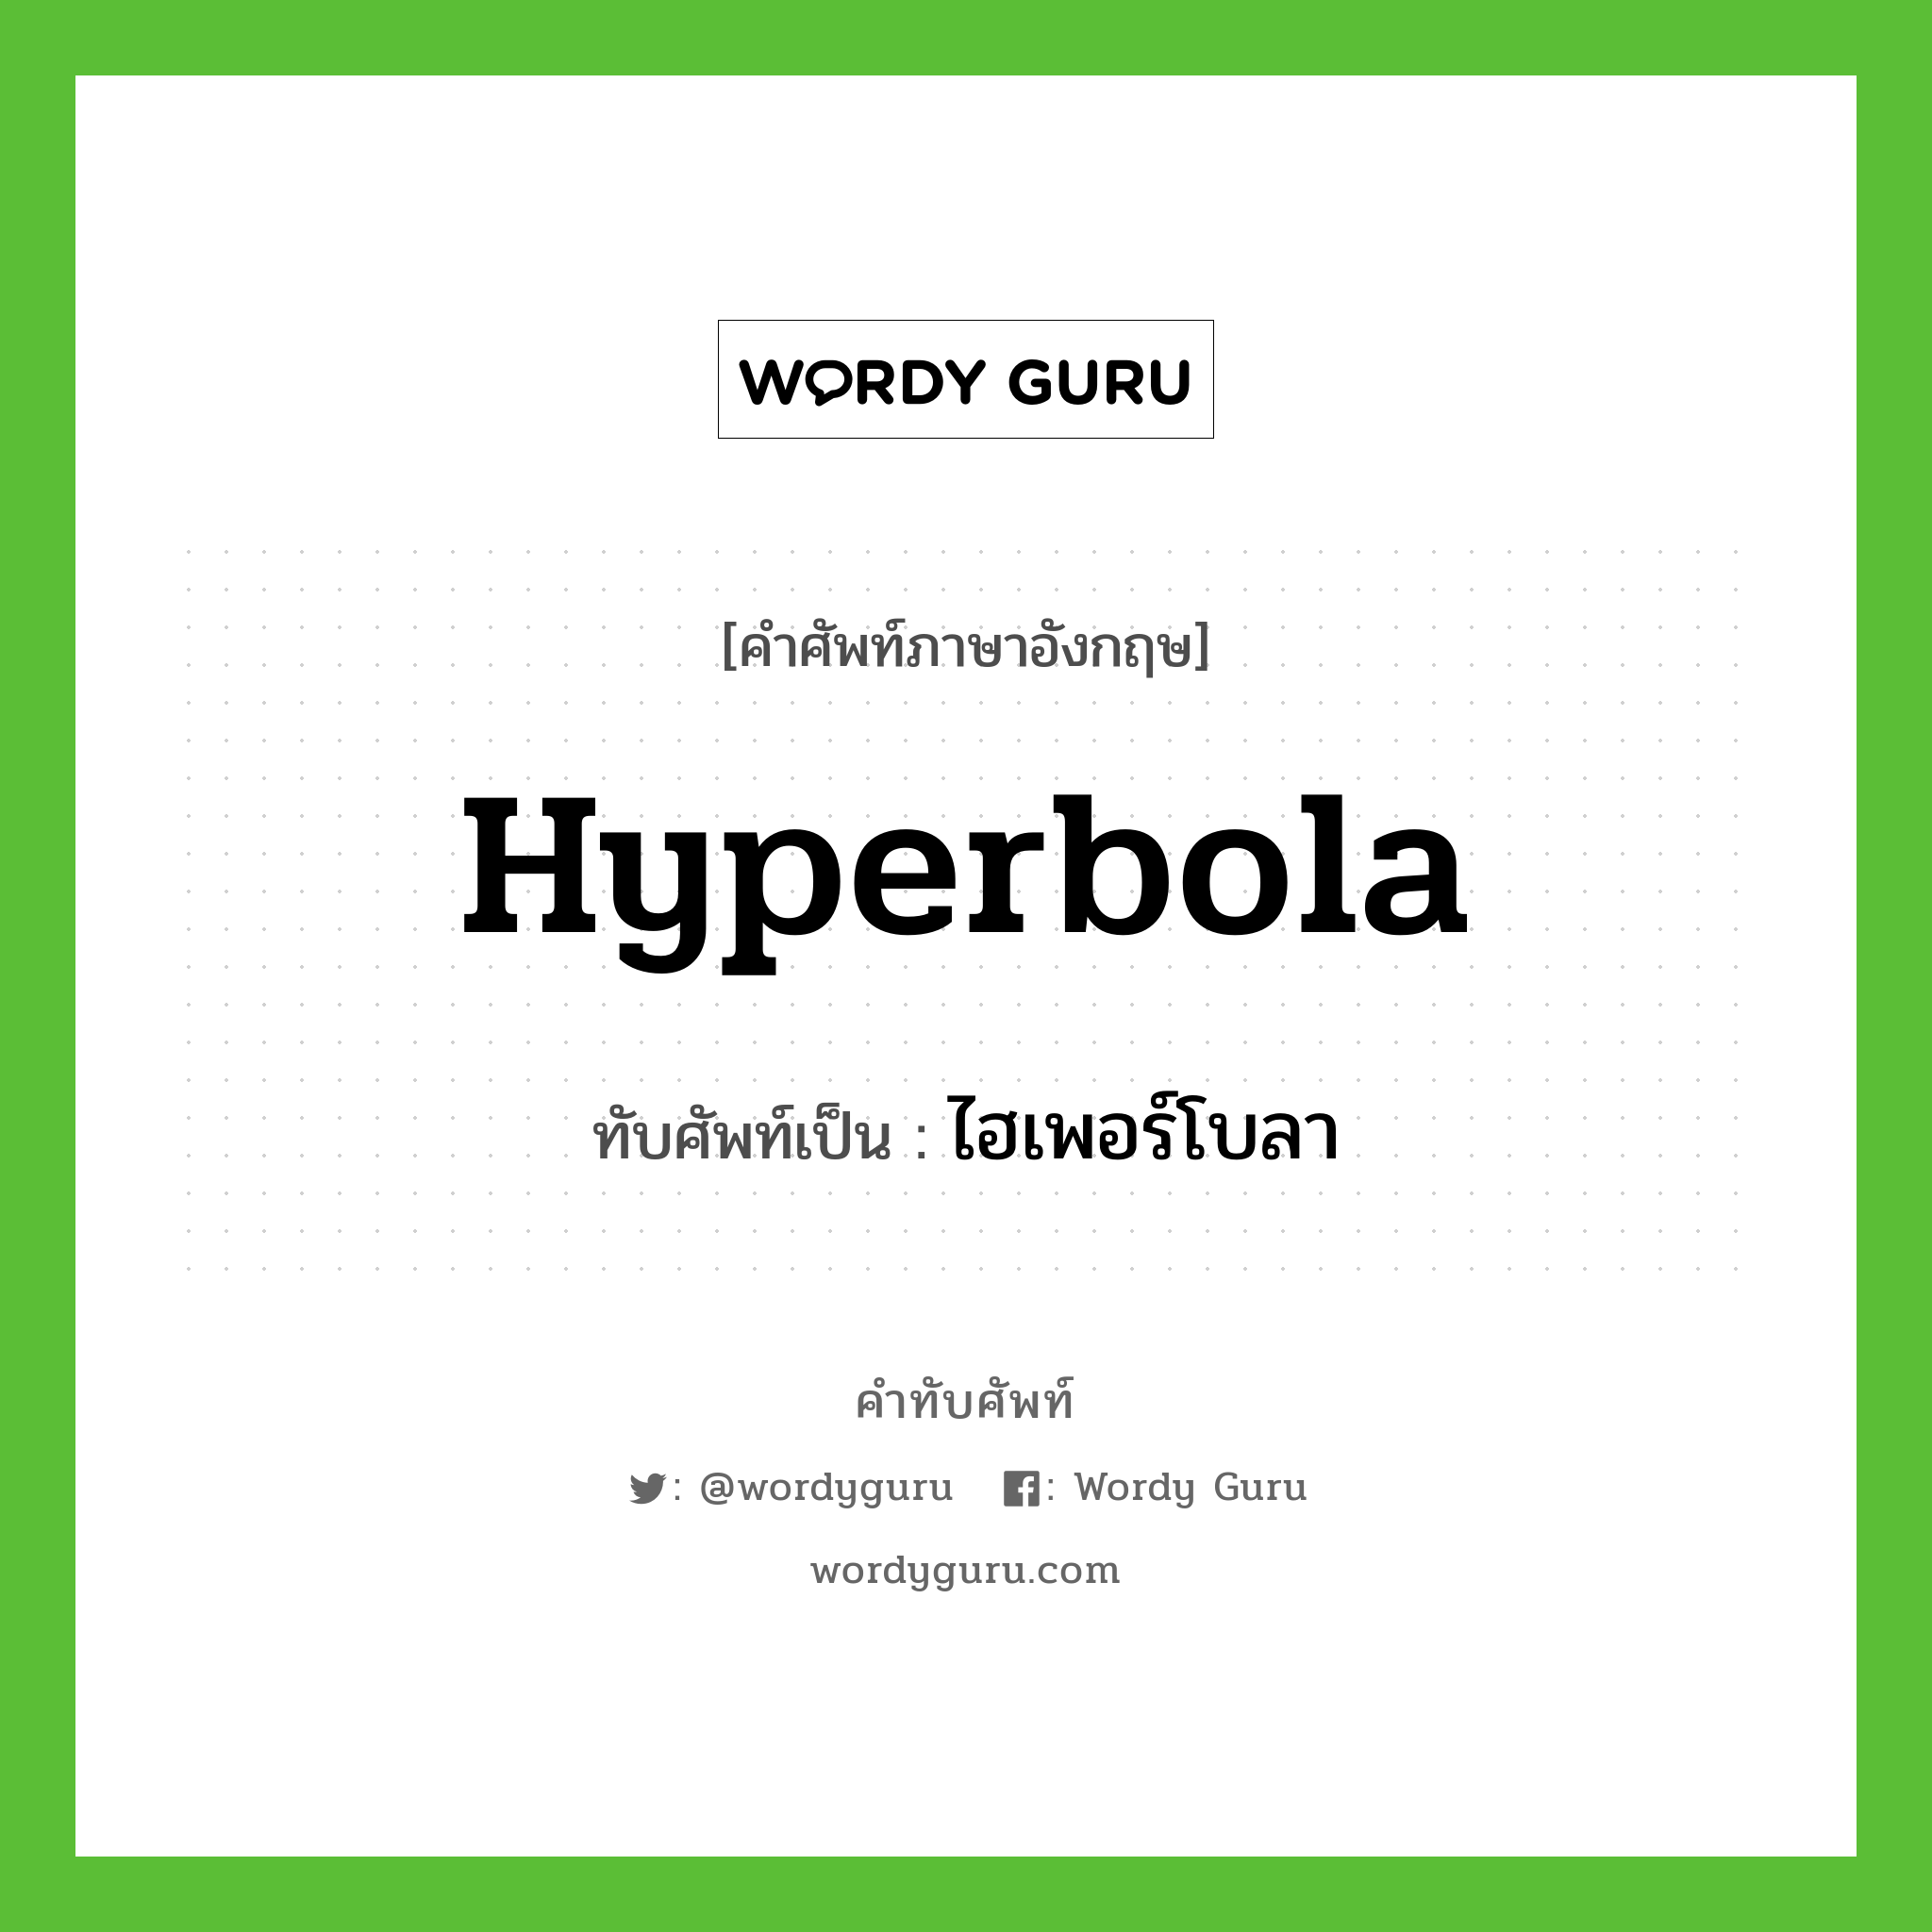 ไฮเพอร์โบลา เขียนอย่างไร?, คำศัพท์ภาษาอังกฤษ ไฮเพอร์โบลา ทับศัพท์เป็น hyperbola